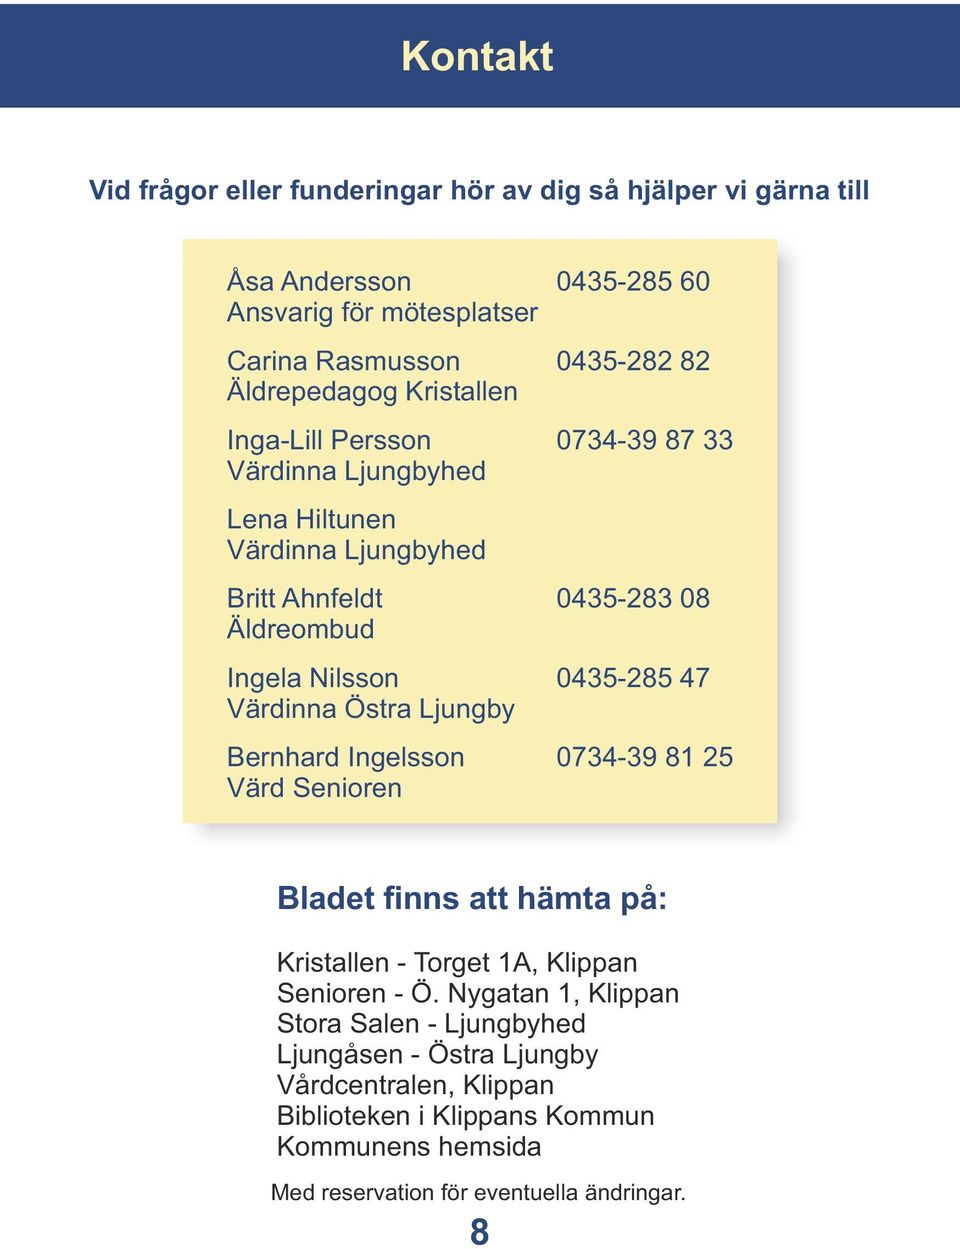 0435-285 47 Värdinna Östra Ljungby Bernhard Ingelsson 0734-39 81 25 Värd Senioren Bladet finns att hämta på: Kristallen - Torget 1A, Klippan Senioren - Ö.